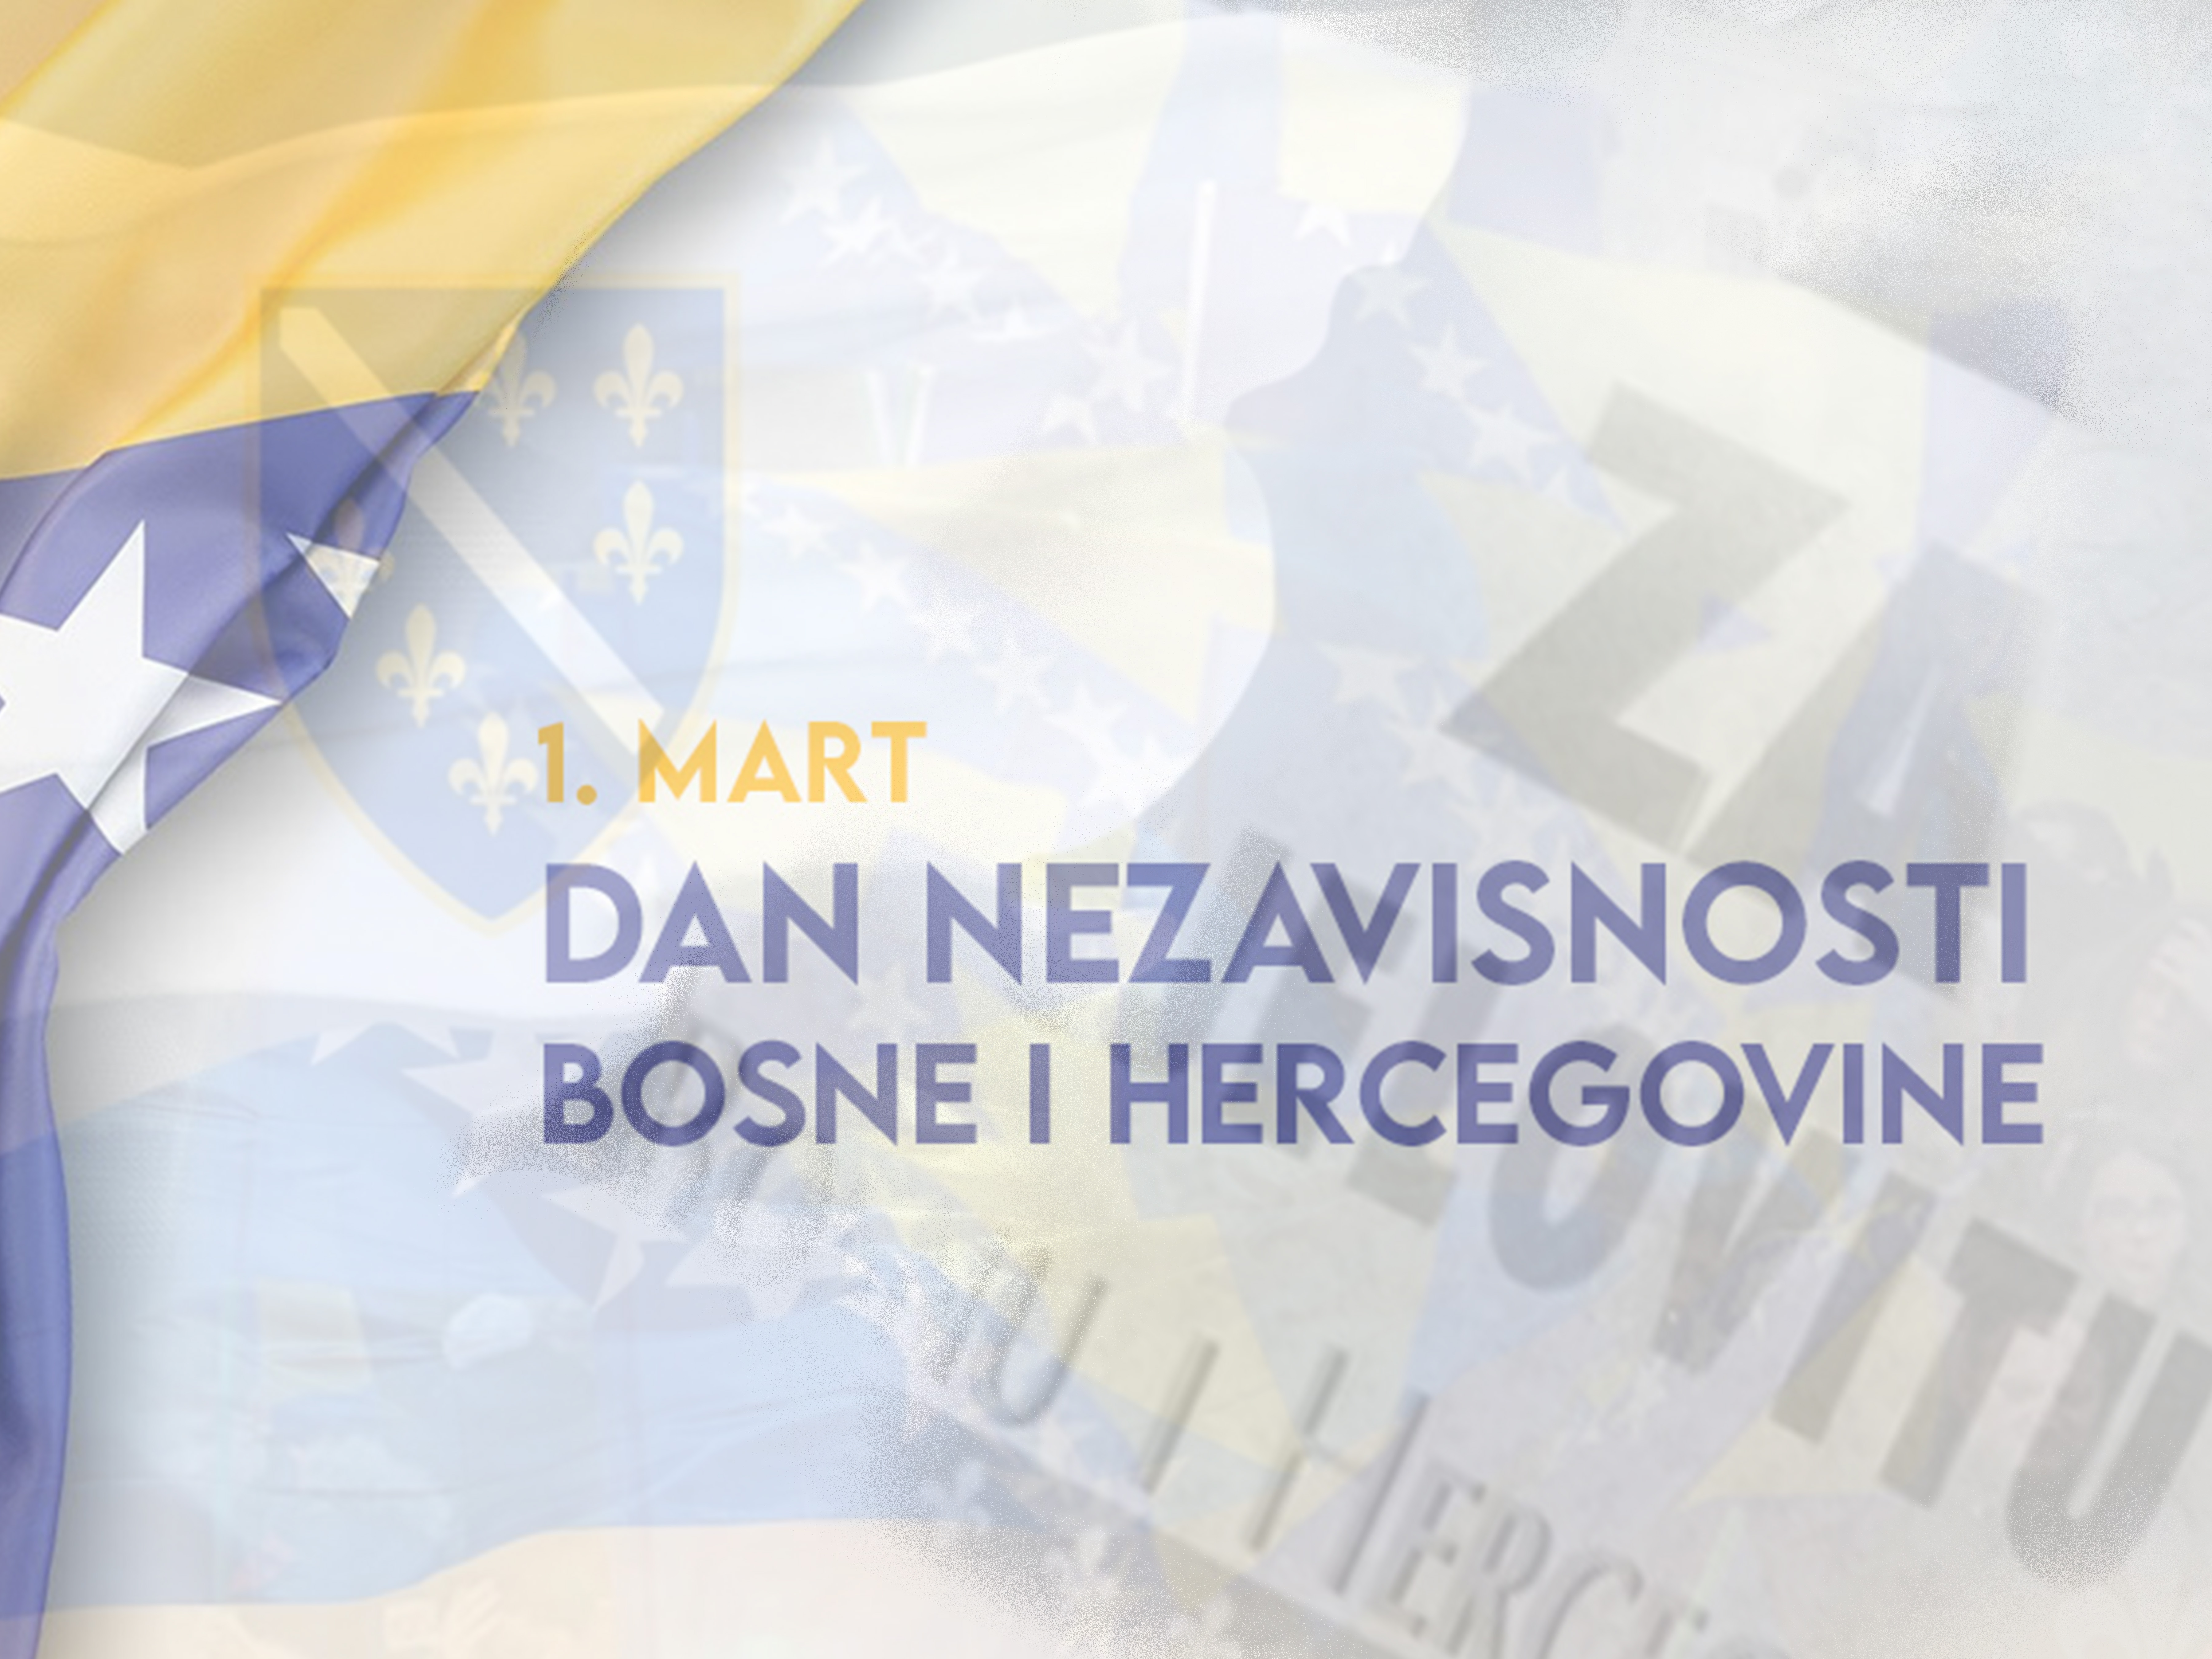 Čestitamo 1. mart – Dan nezavisnosti Bosne i Hercegovine